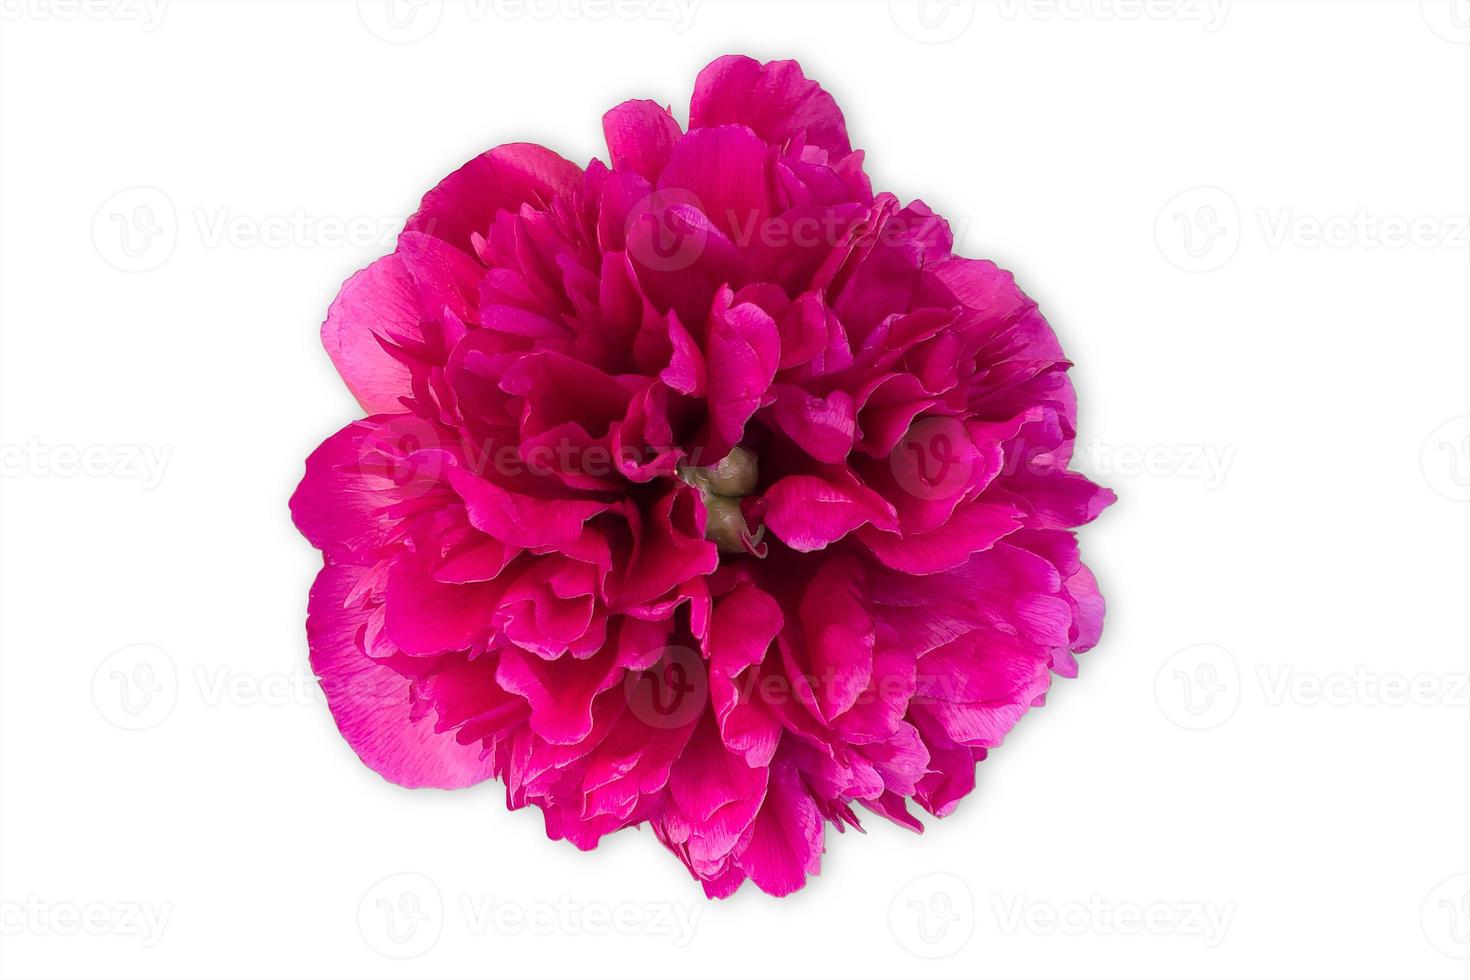 botão de flor de peônia vermelho brilhante ou roxo sob luz artificial, isolado no fundo branco foto